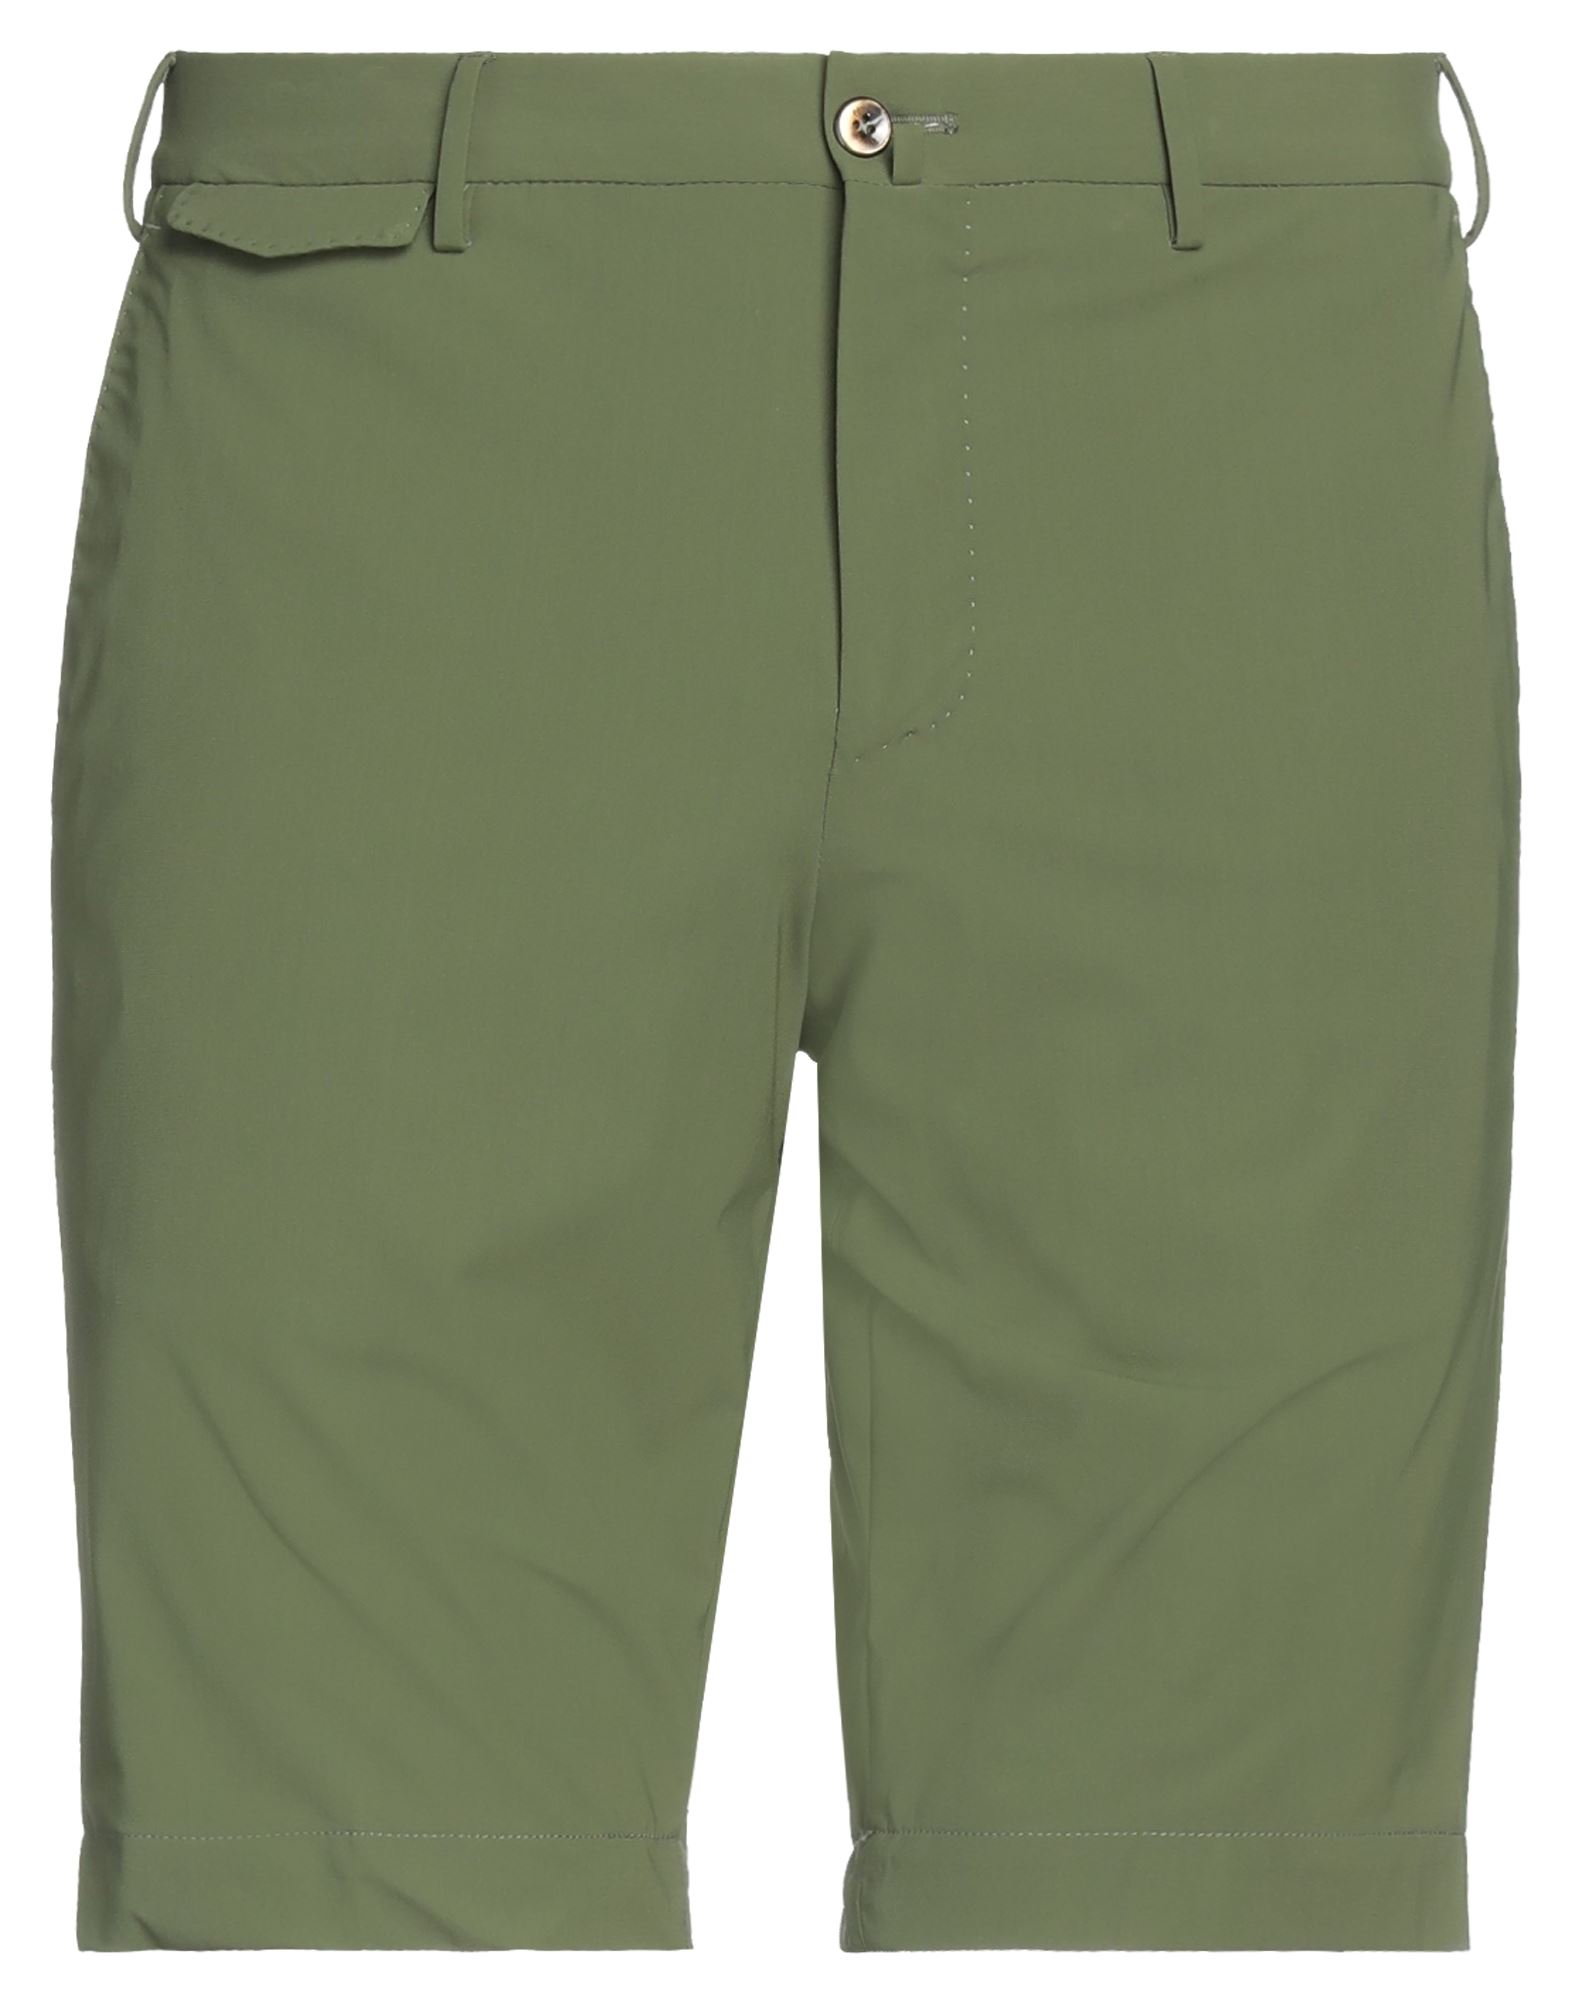 Pt Torino Man Shorts & Bermuda Shorts Military Green Size 32 Polyamide, Elastane